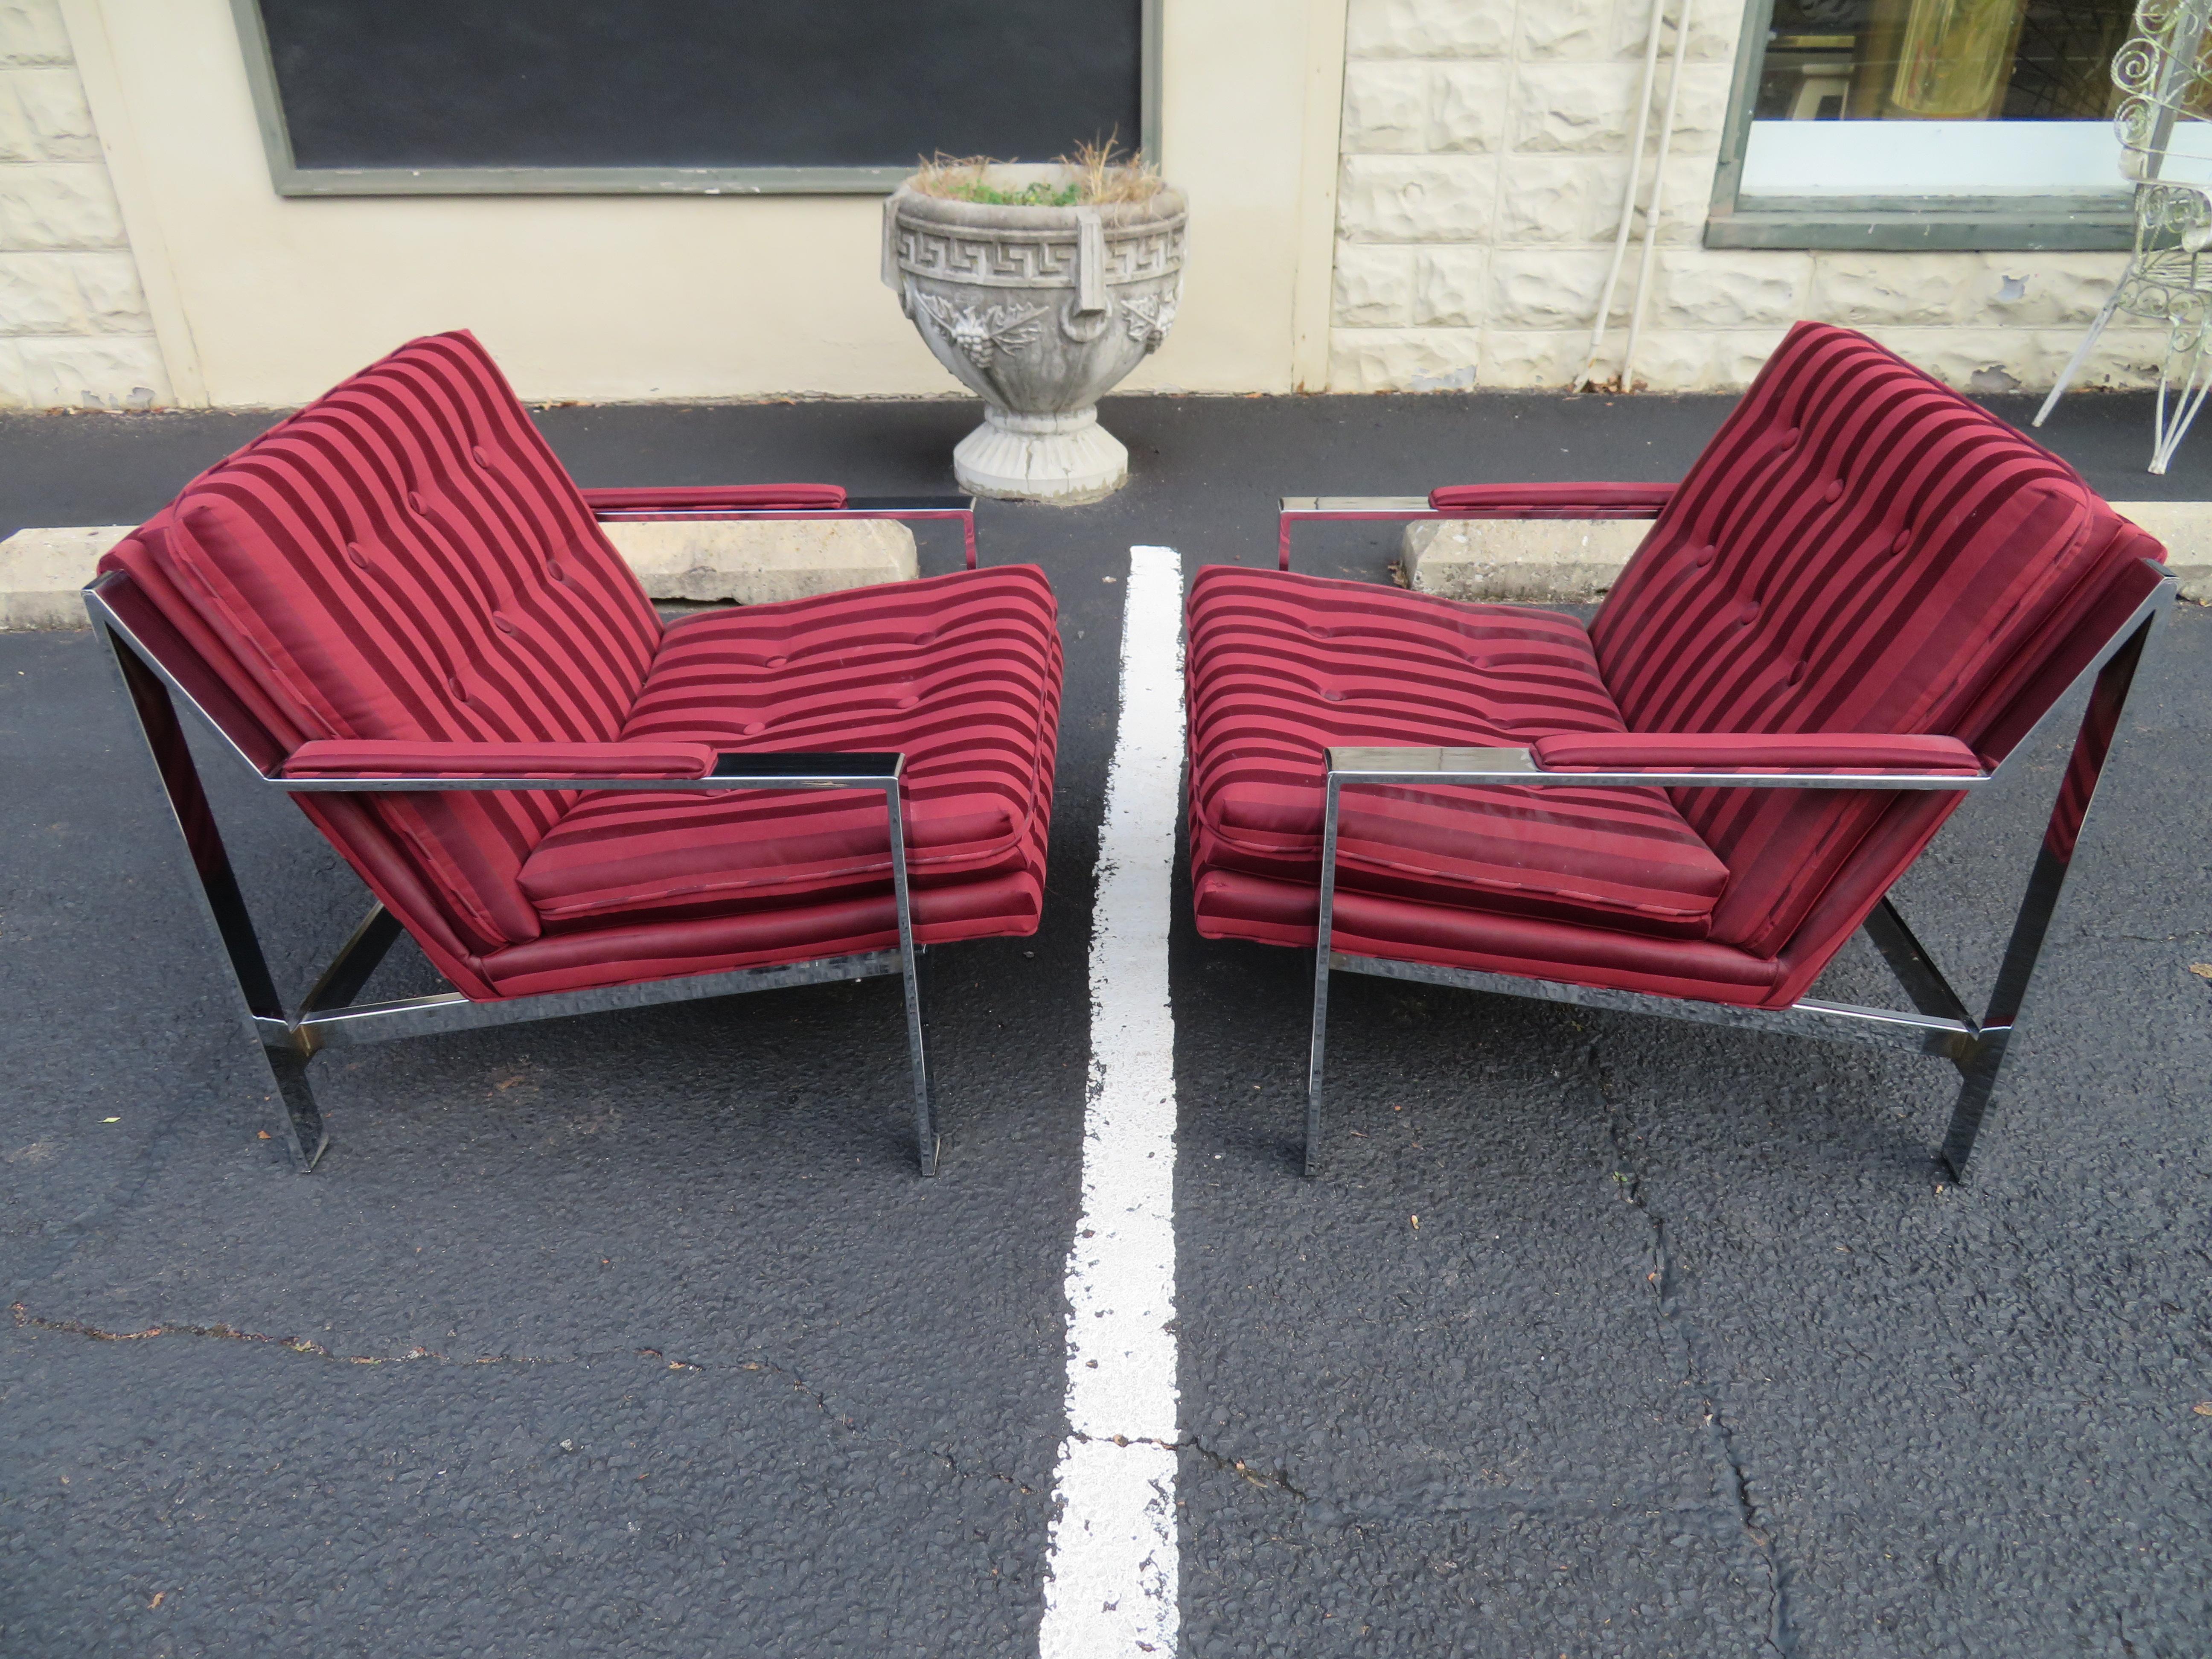 Fantastique paire de chaises de bar plates chromées de style Milo Baughman. Ils sont en fait très beaux tels quels, mais il serait préférable de les retapisser. Les cadres chromés sont en très bon état vintage - très brillants - et présentent